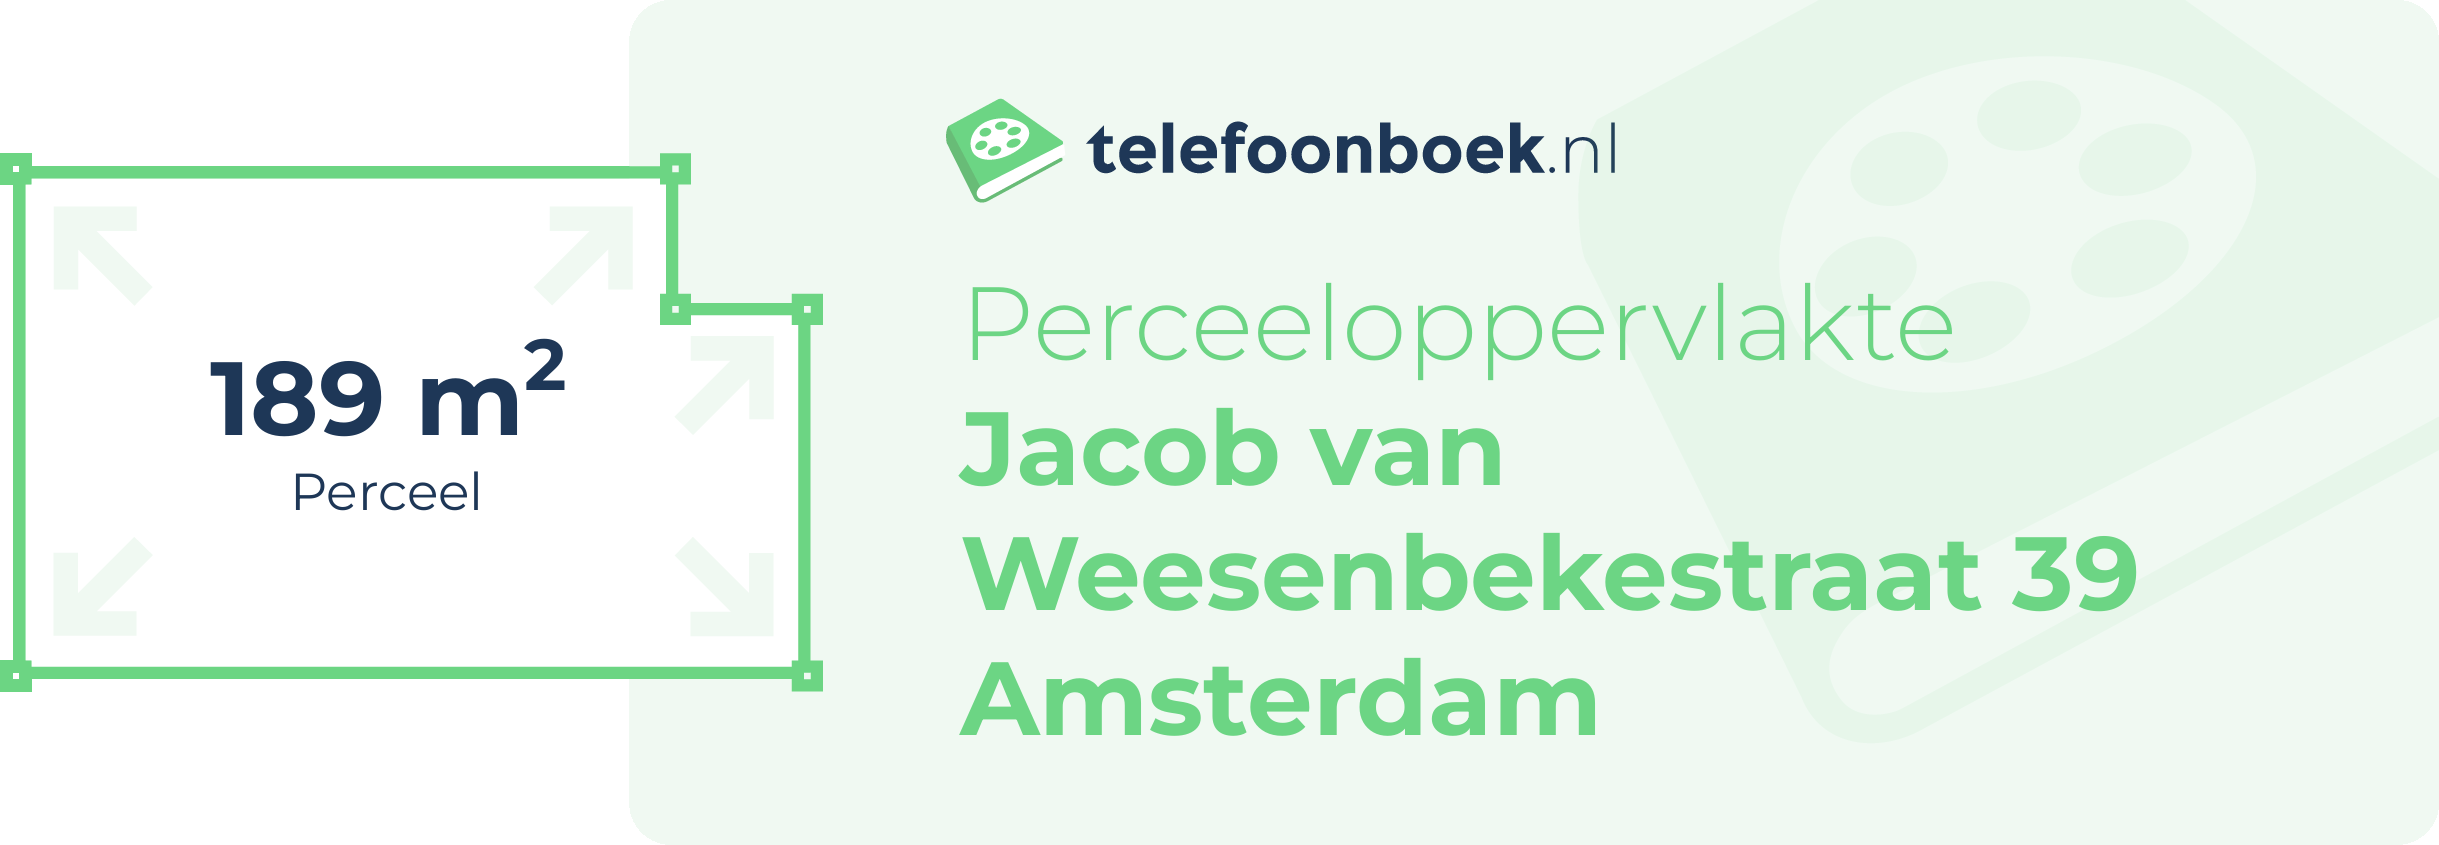 Perceeloppervlakte Jacob Van Weesenbekestraat 39 Amsterdam